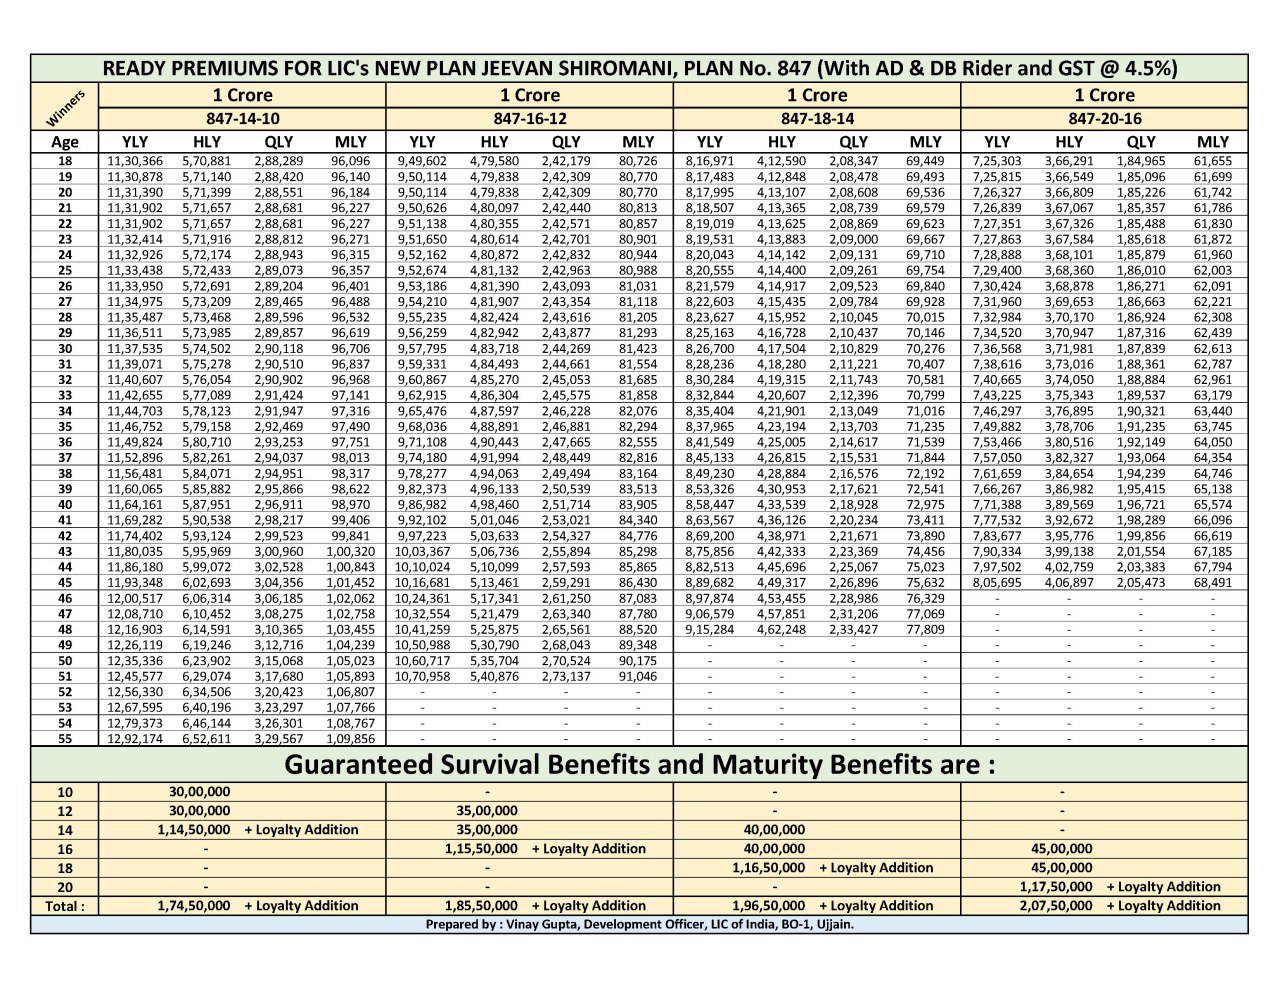 Kanyadan Policy Premium Chart